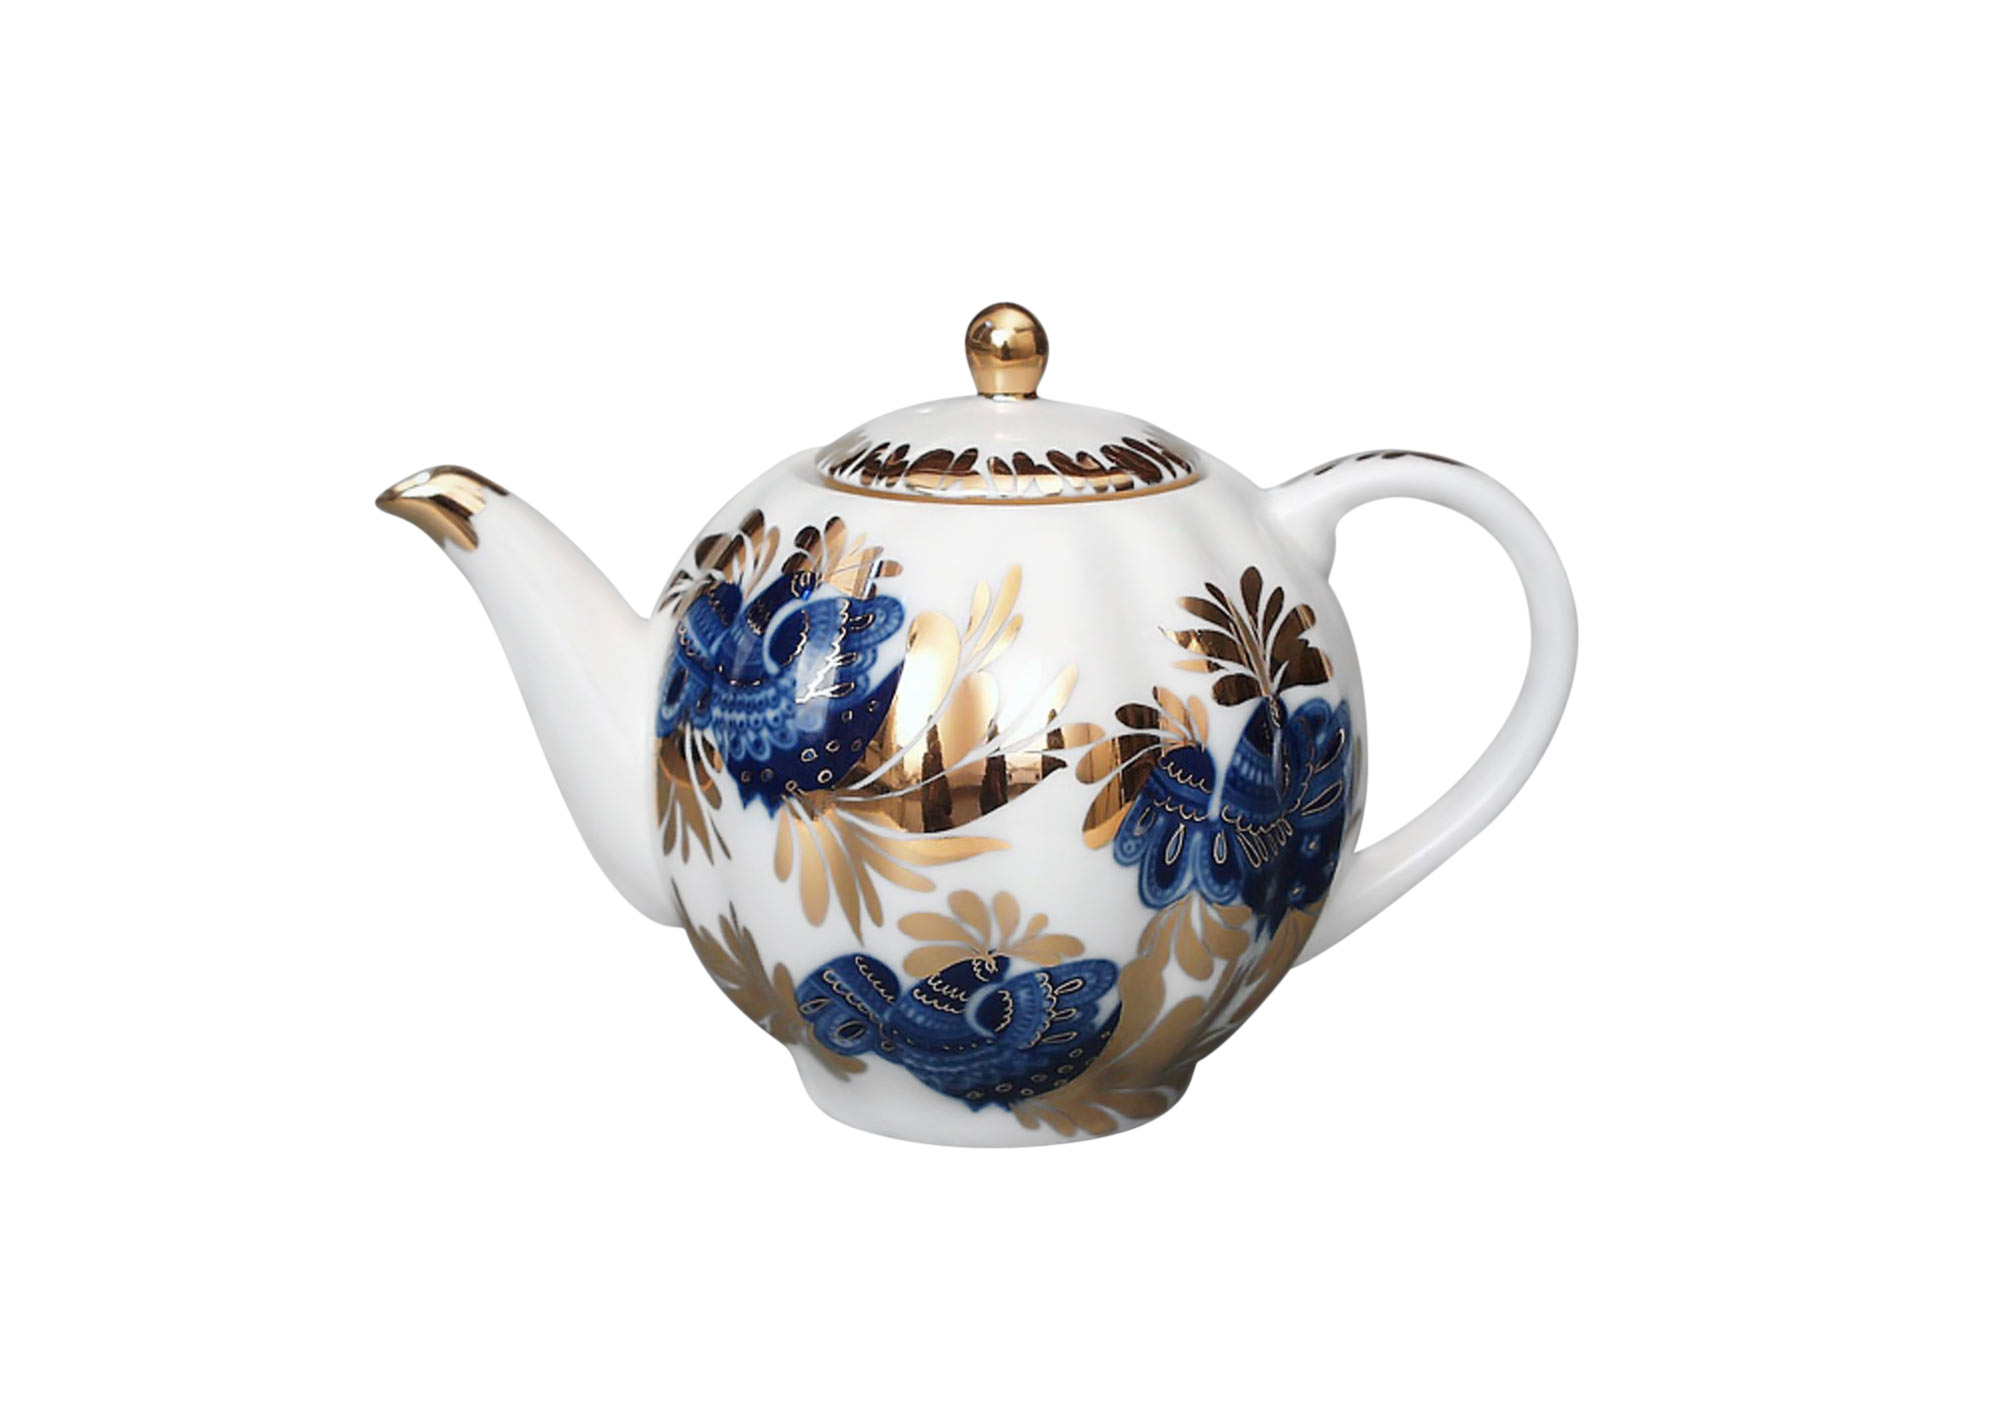 Buy Golden Garden Teapot, medium at GoldenCockerel.com